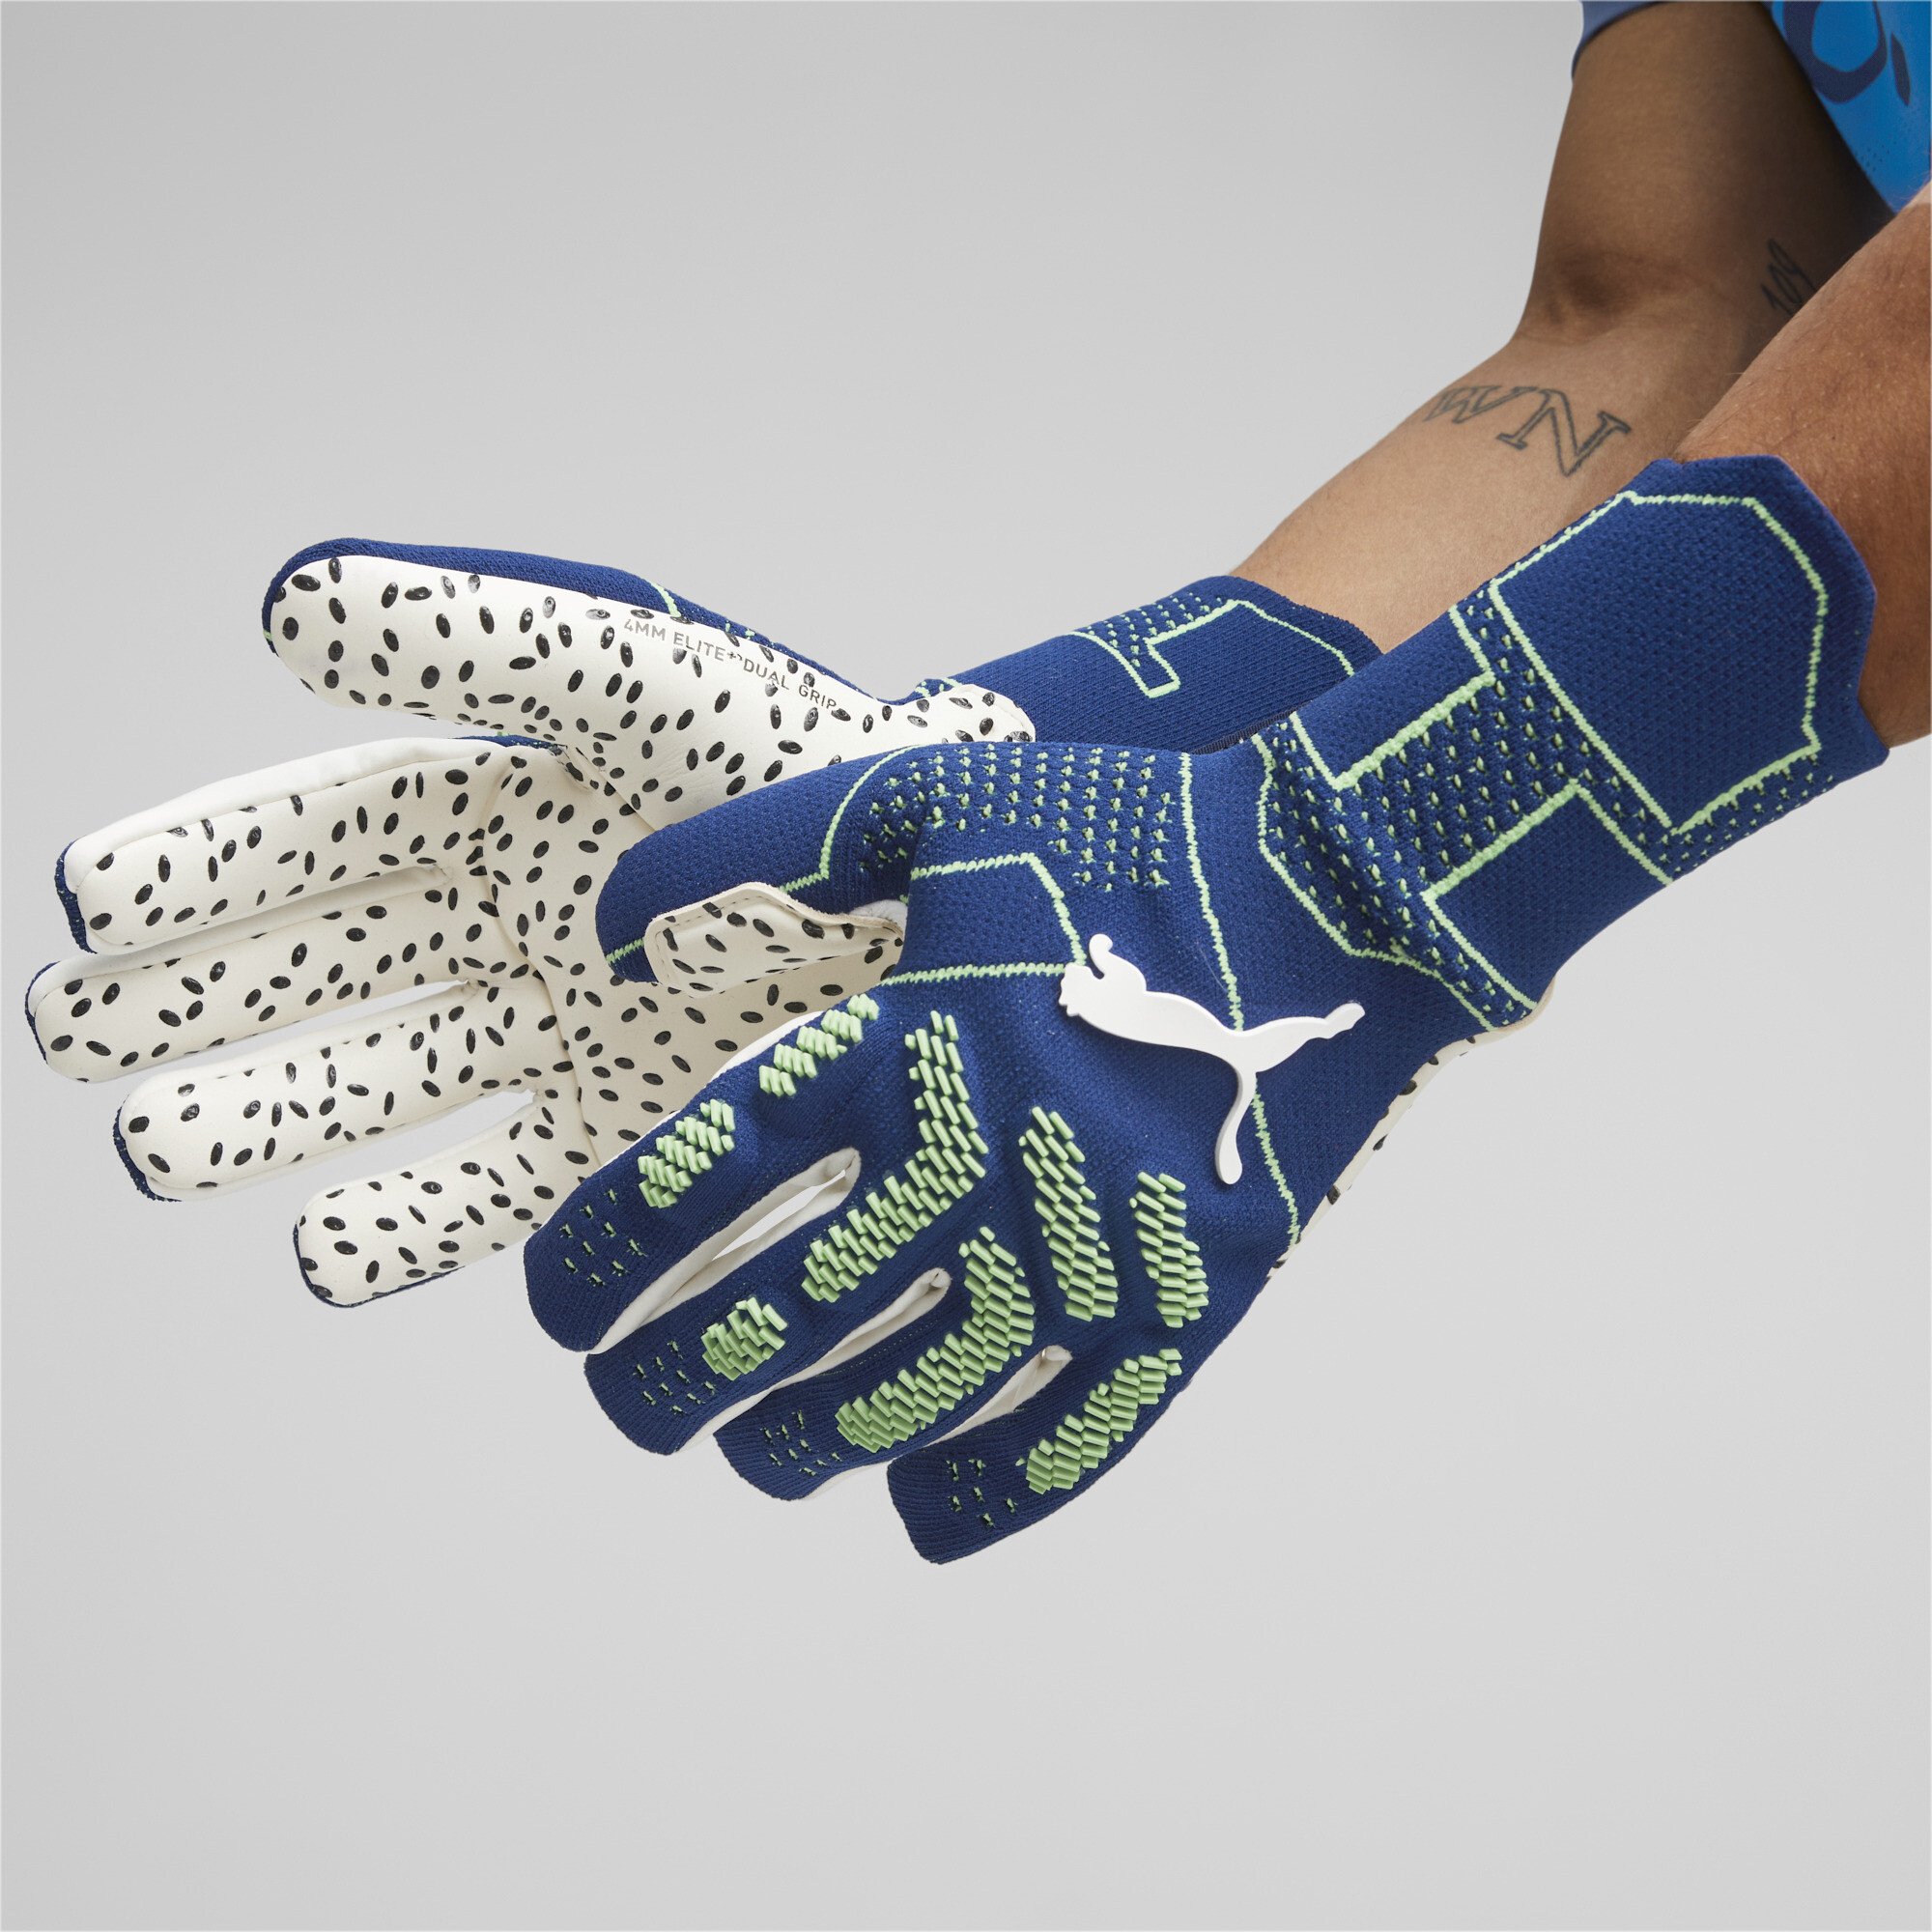 Men's Puma FUTURE Ultimate Negative Cut Football Goalkeeper Gloves, Blue, Size 11, Accessories